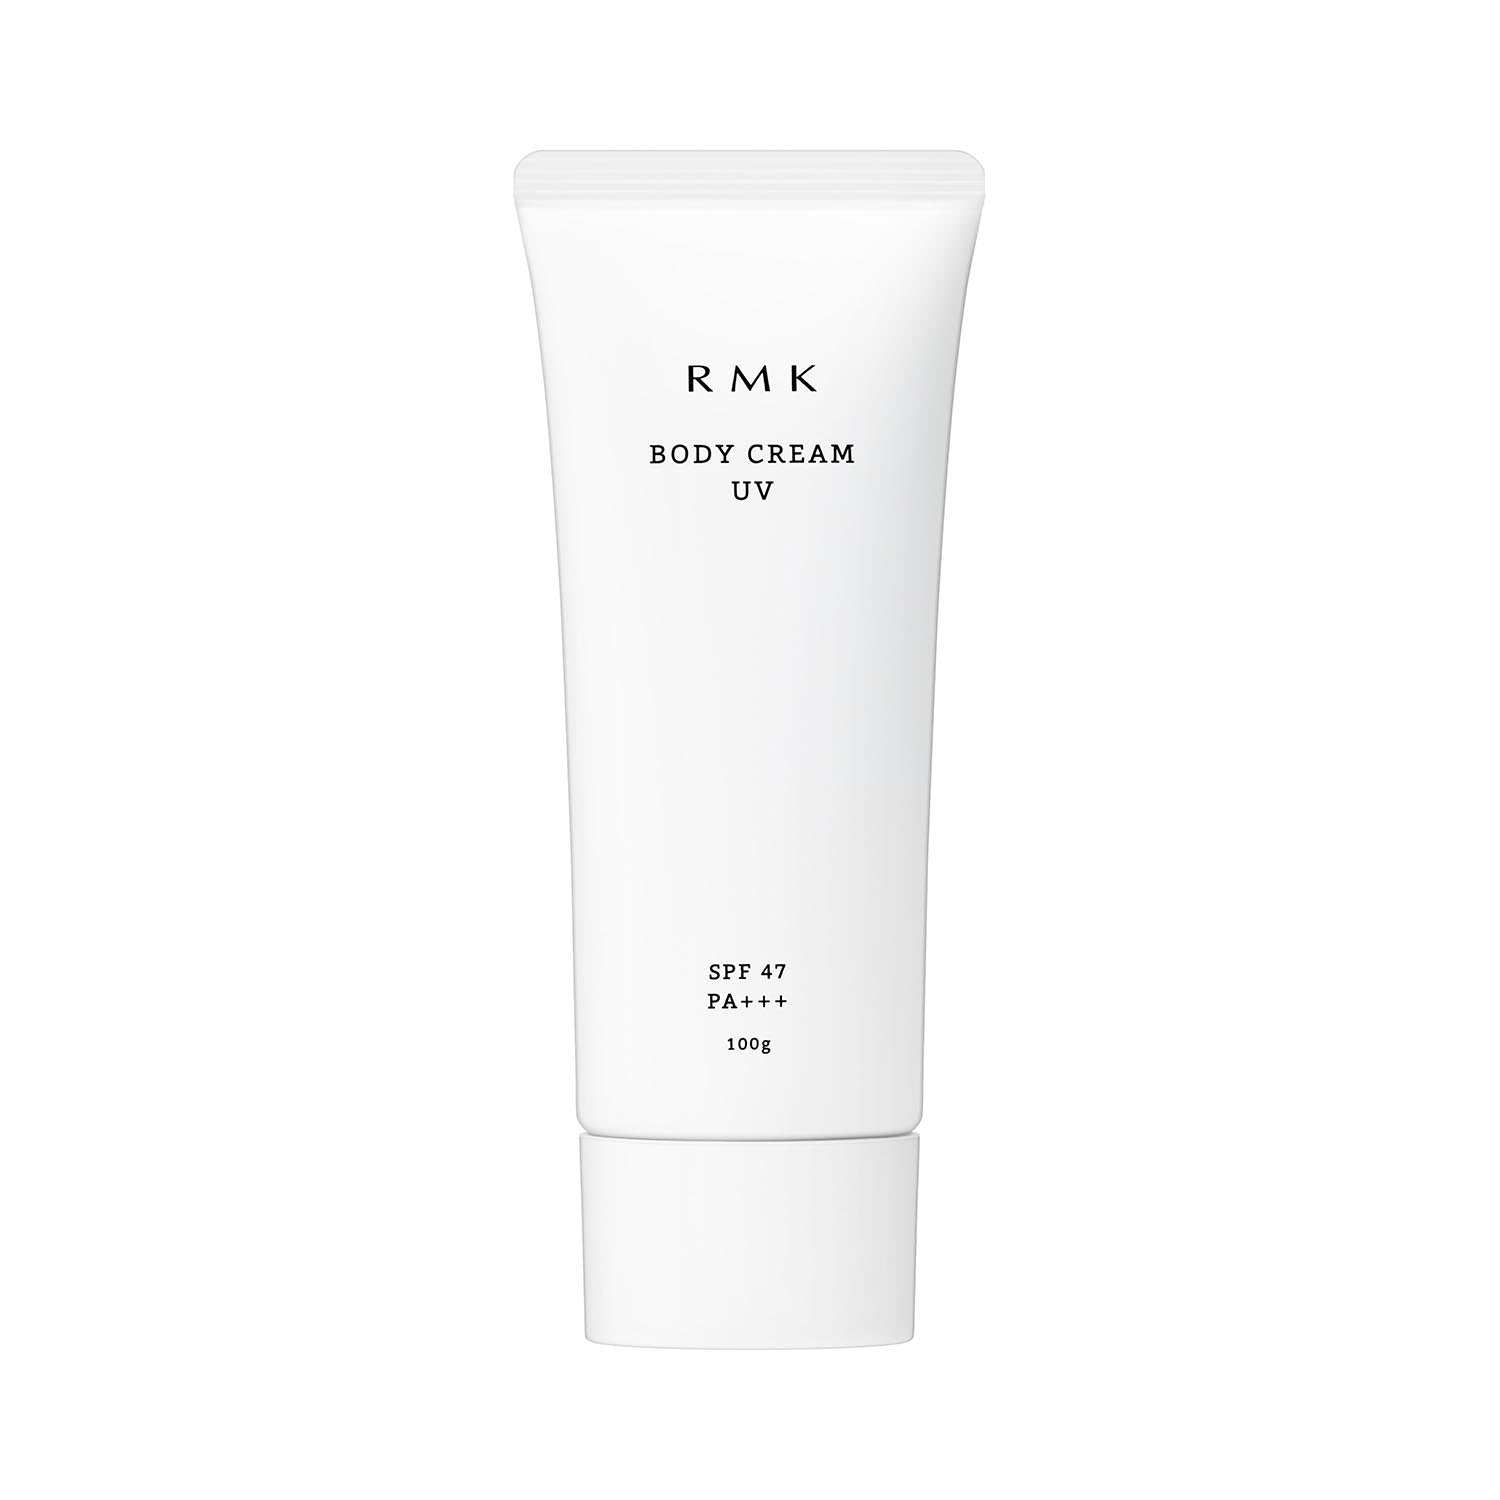 RMK Body Cream UV - Ichiban Mart